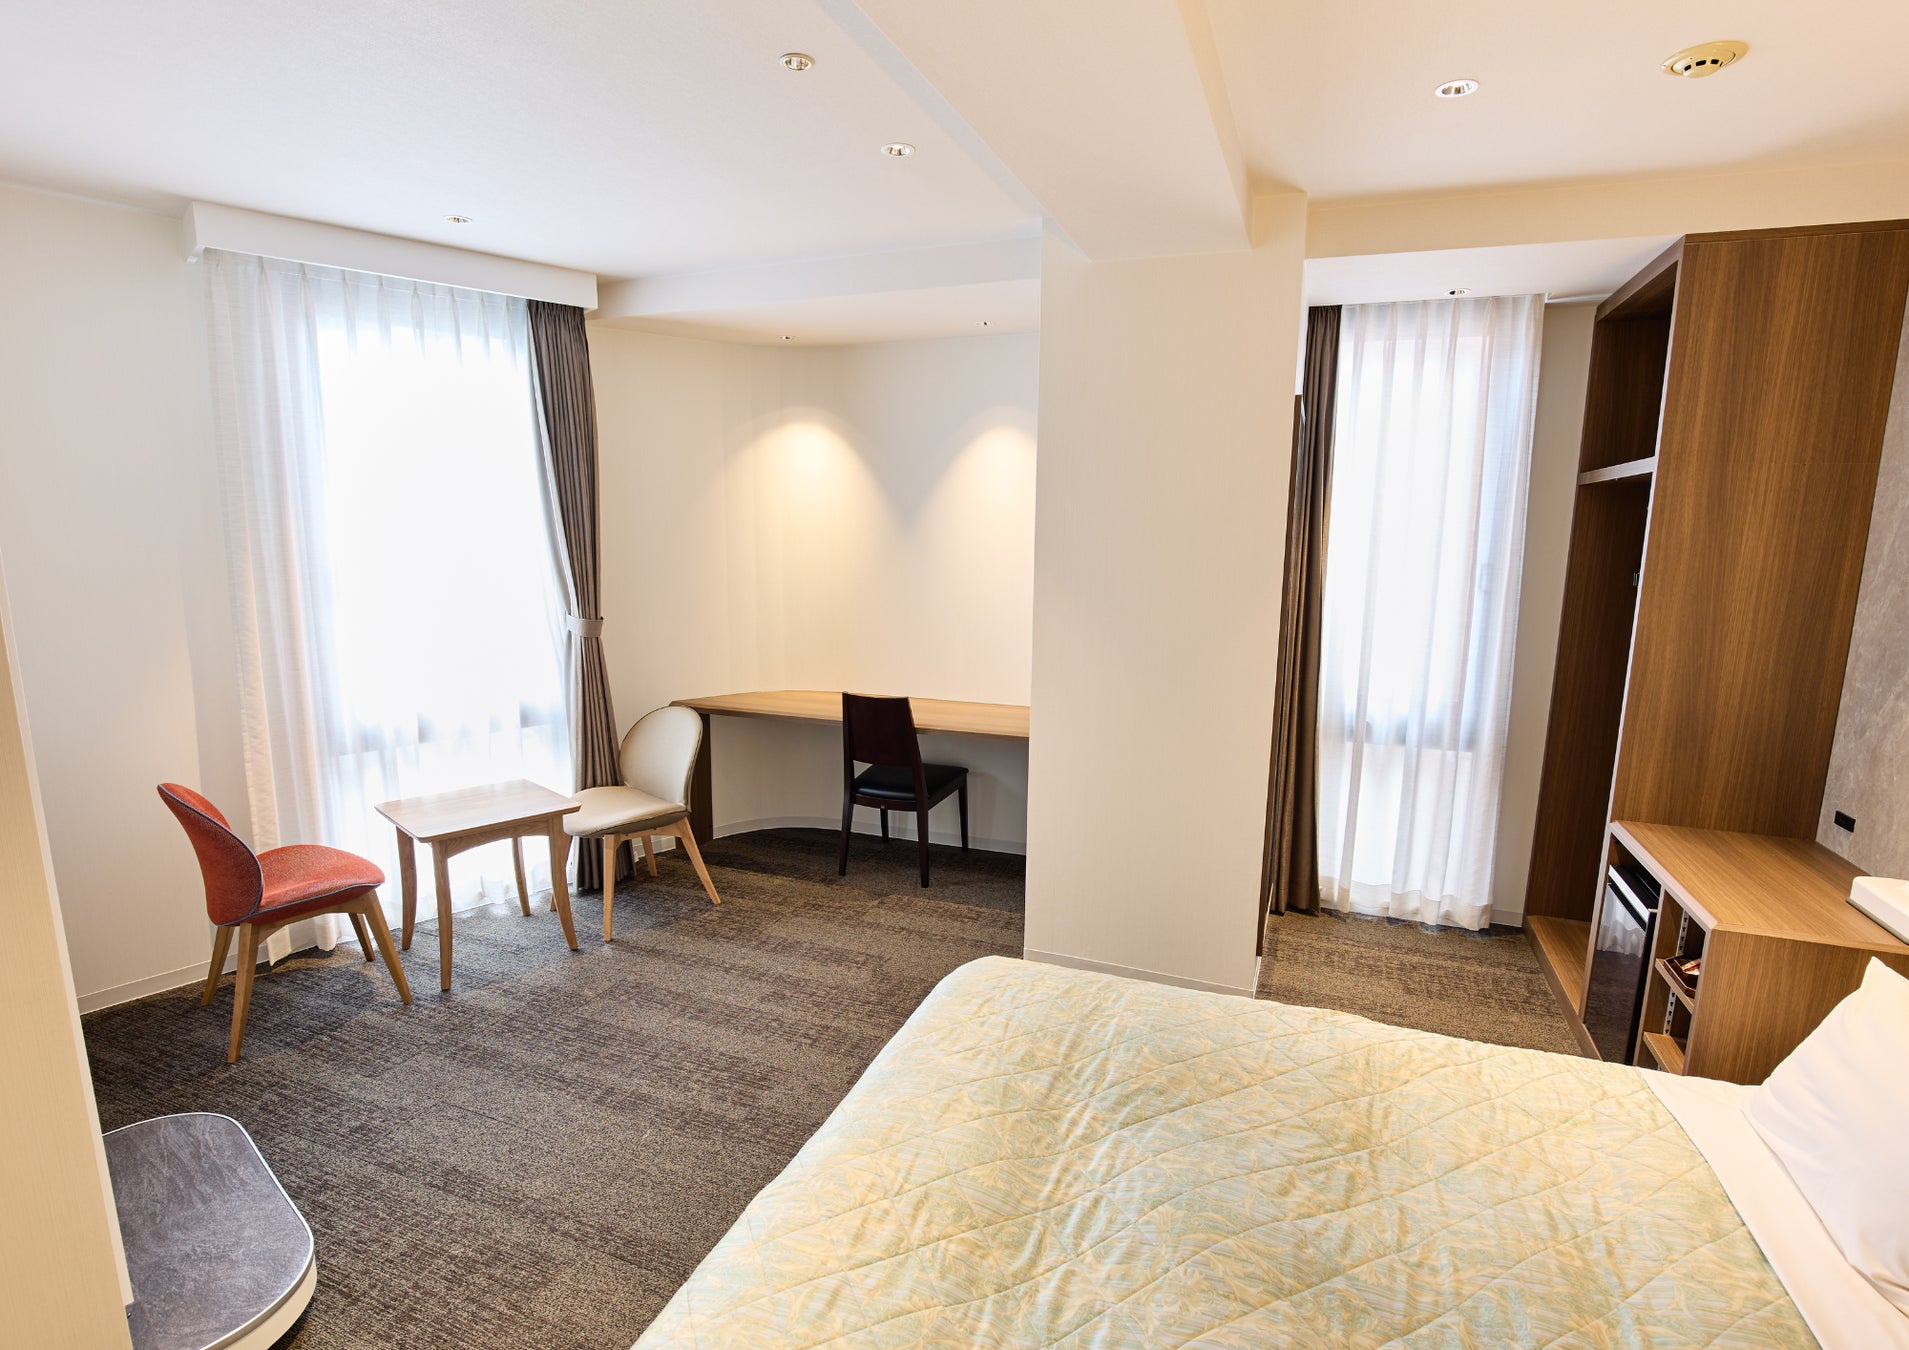 銀座国際ホテル、 客室リニューアルでより快適な滞在を実現